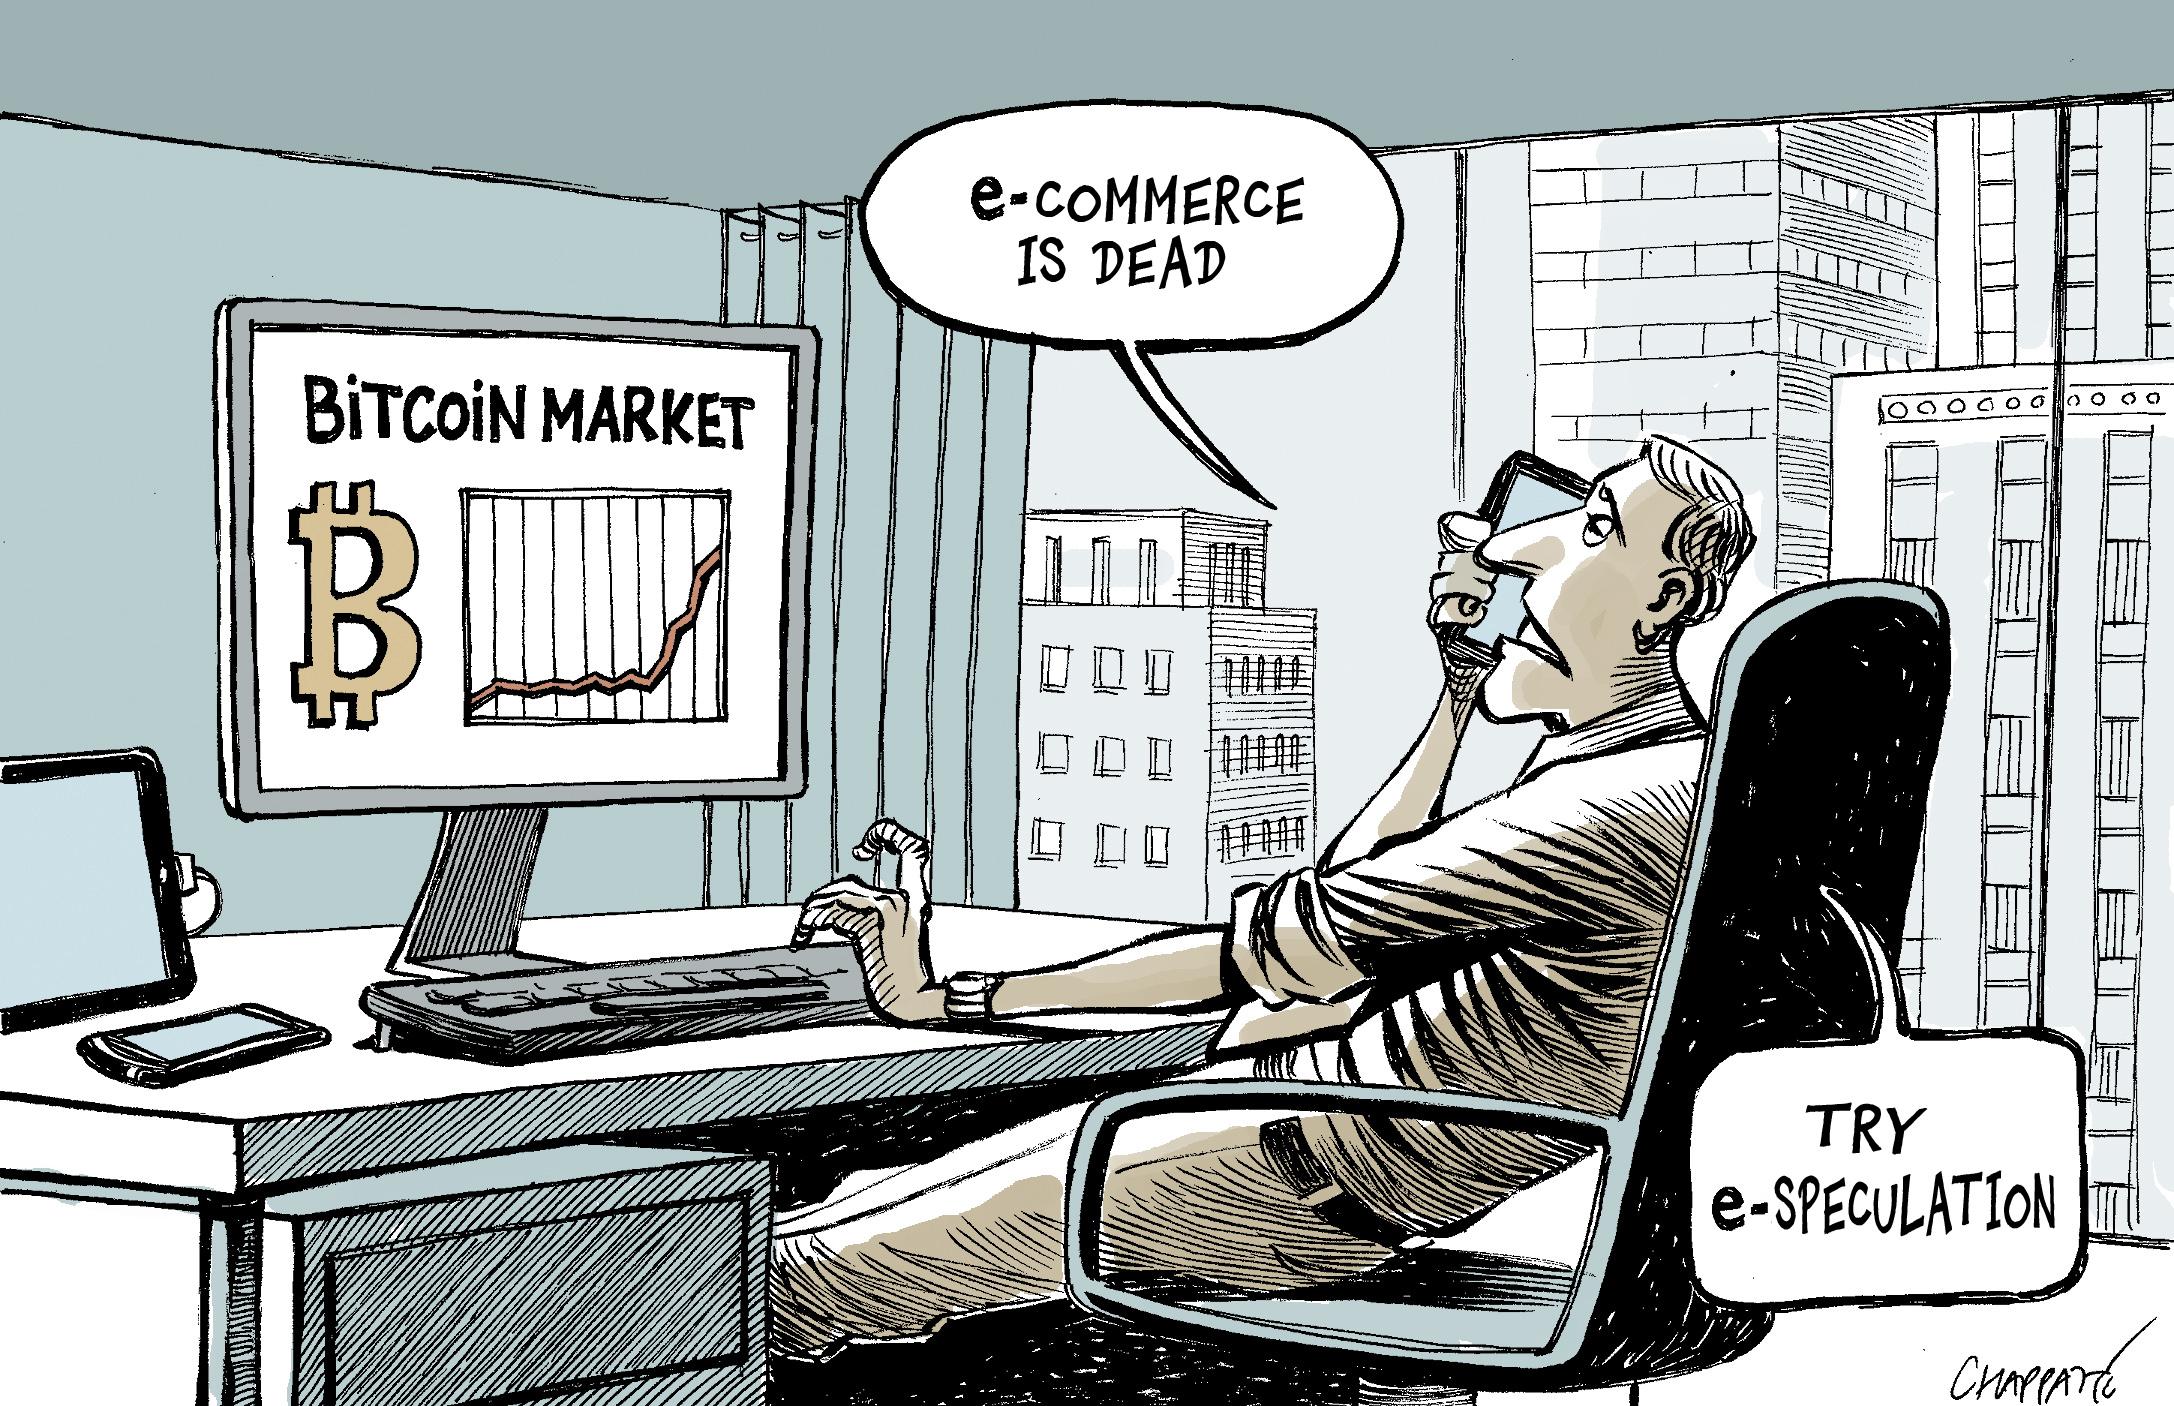 Should we buy Bitcoins?